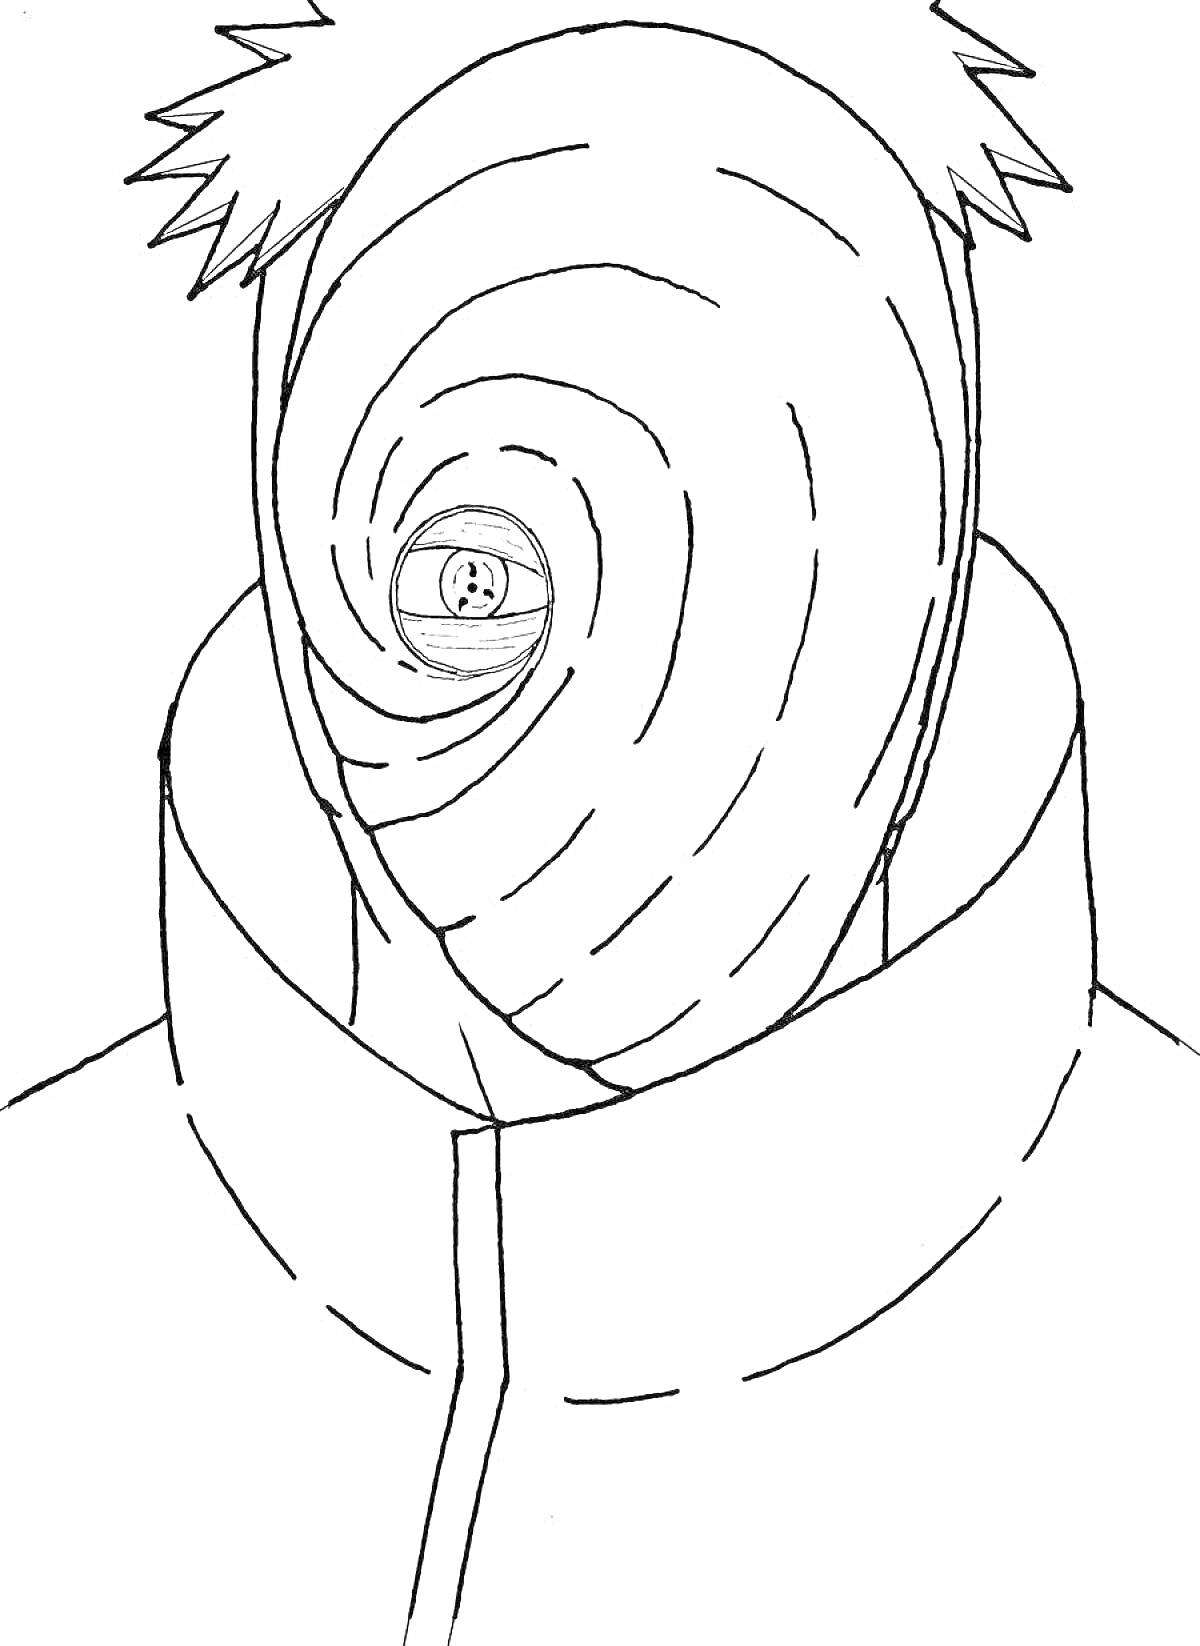 Раскраска Человек с маской в закрученном узоре, глаз с узором шингана, высоко поднятый воротник